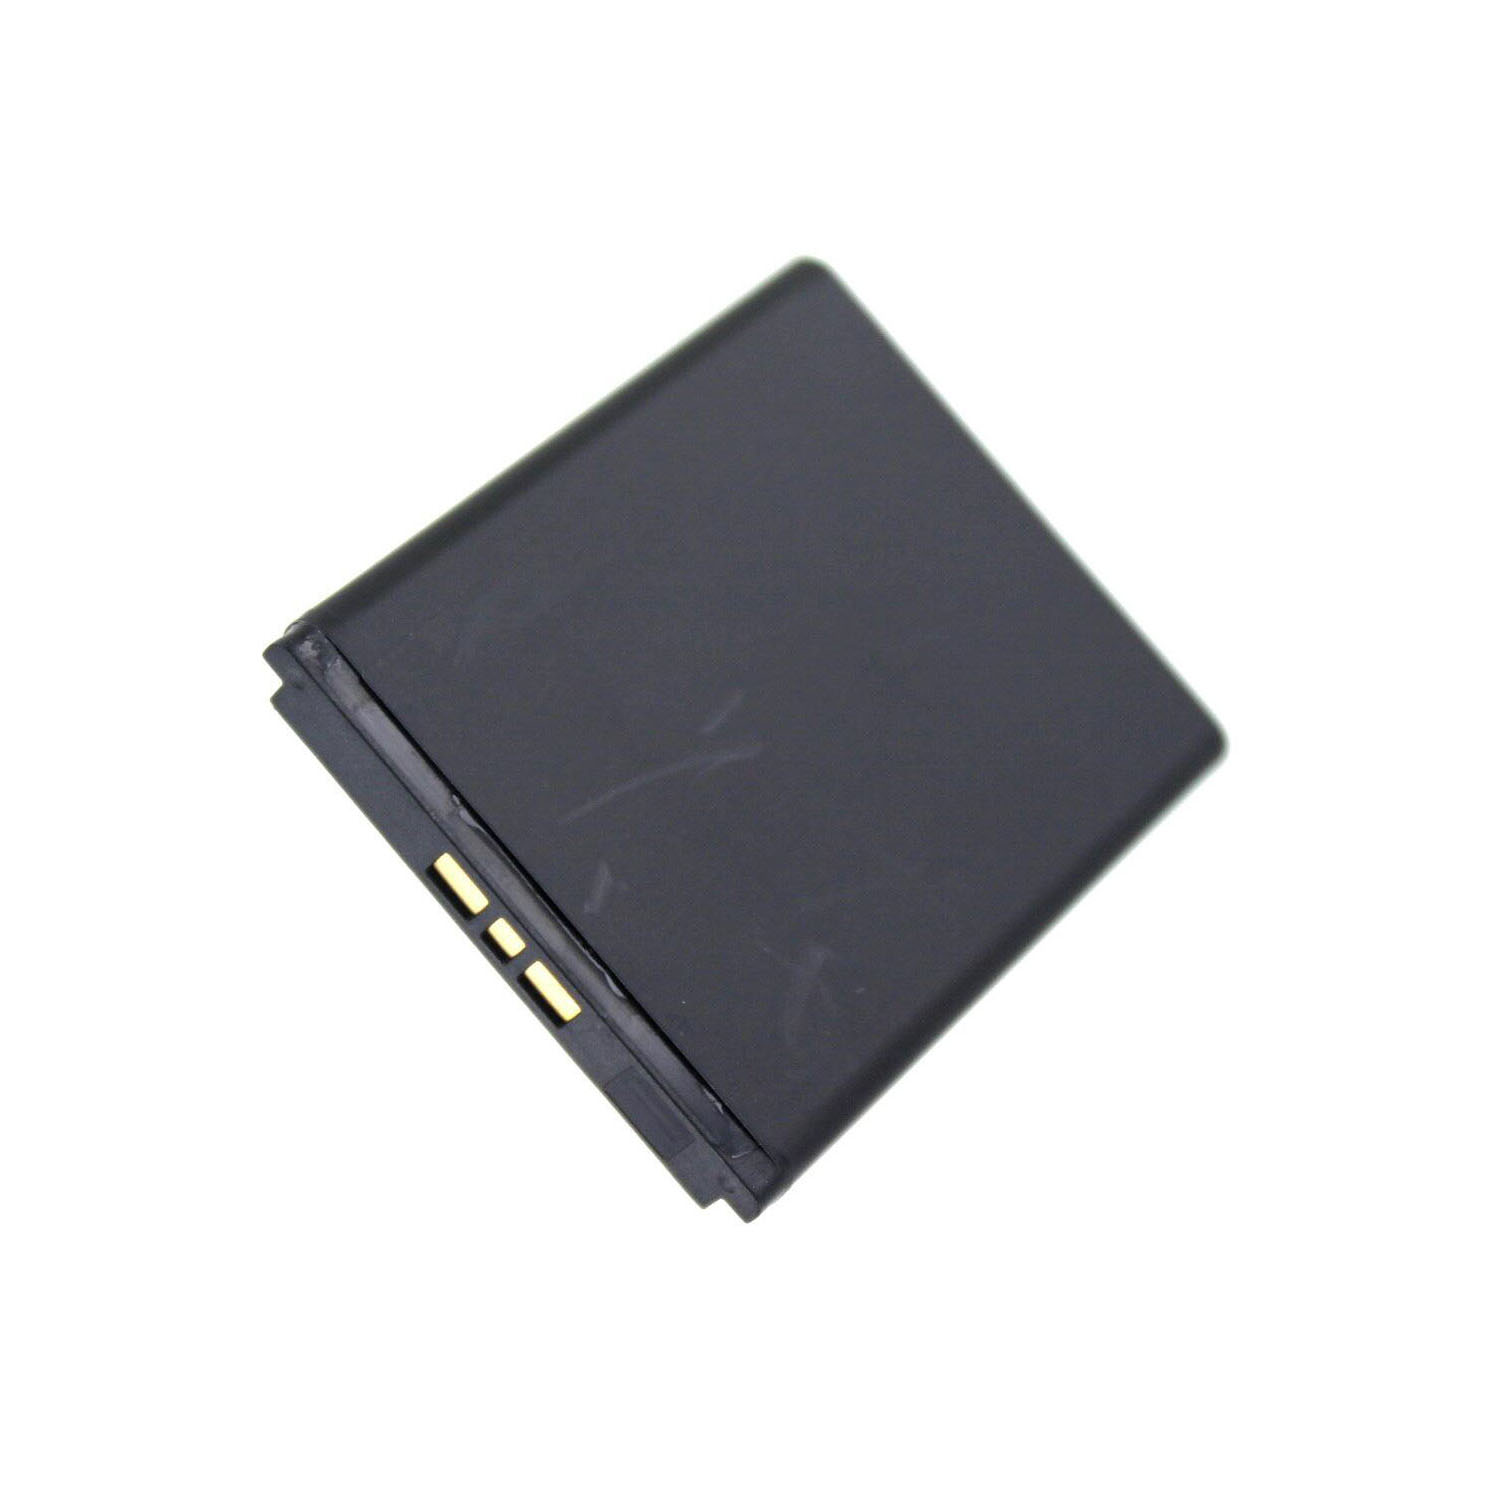 Akku kompatibel mit Sony Ericsson AAD-3880020-BV 3,00 Volt 860 mAh 2,58 Wh Li-Ion Akku